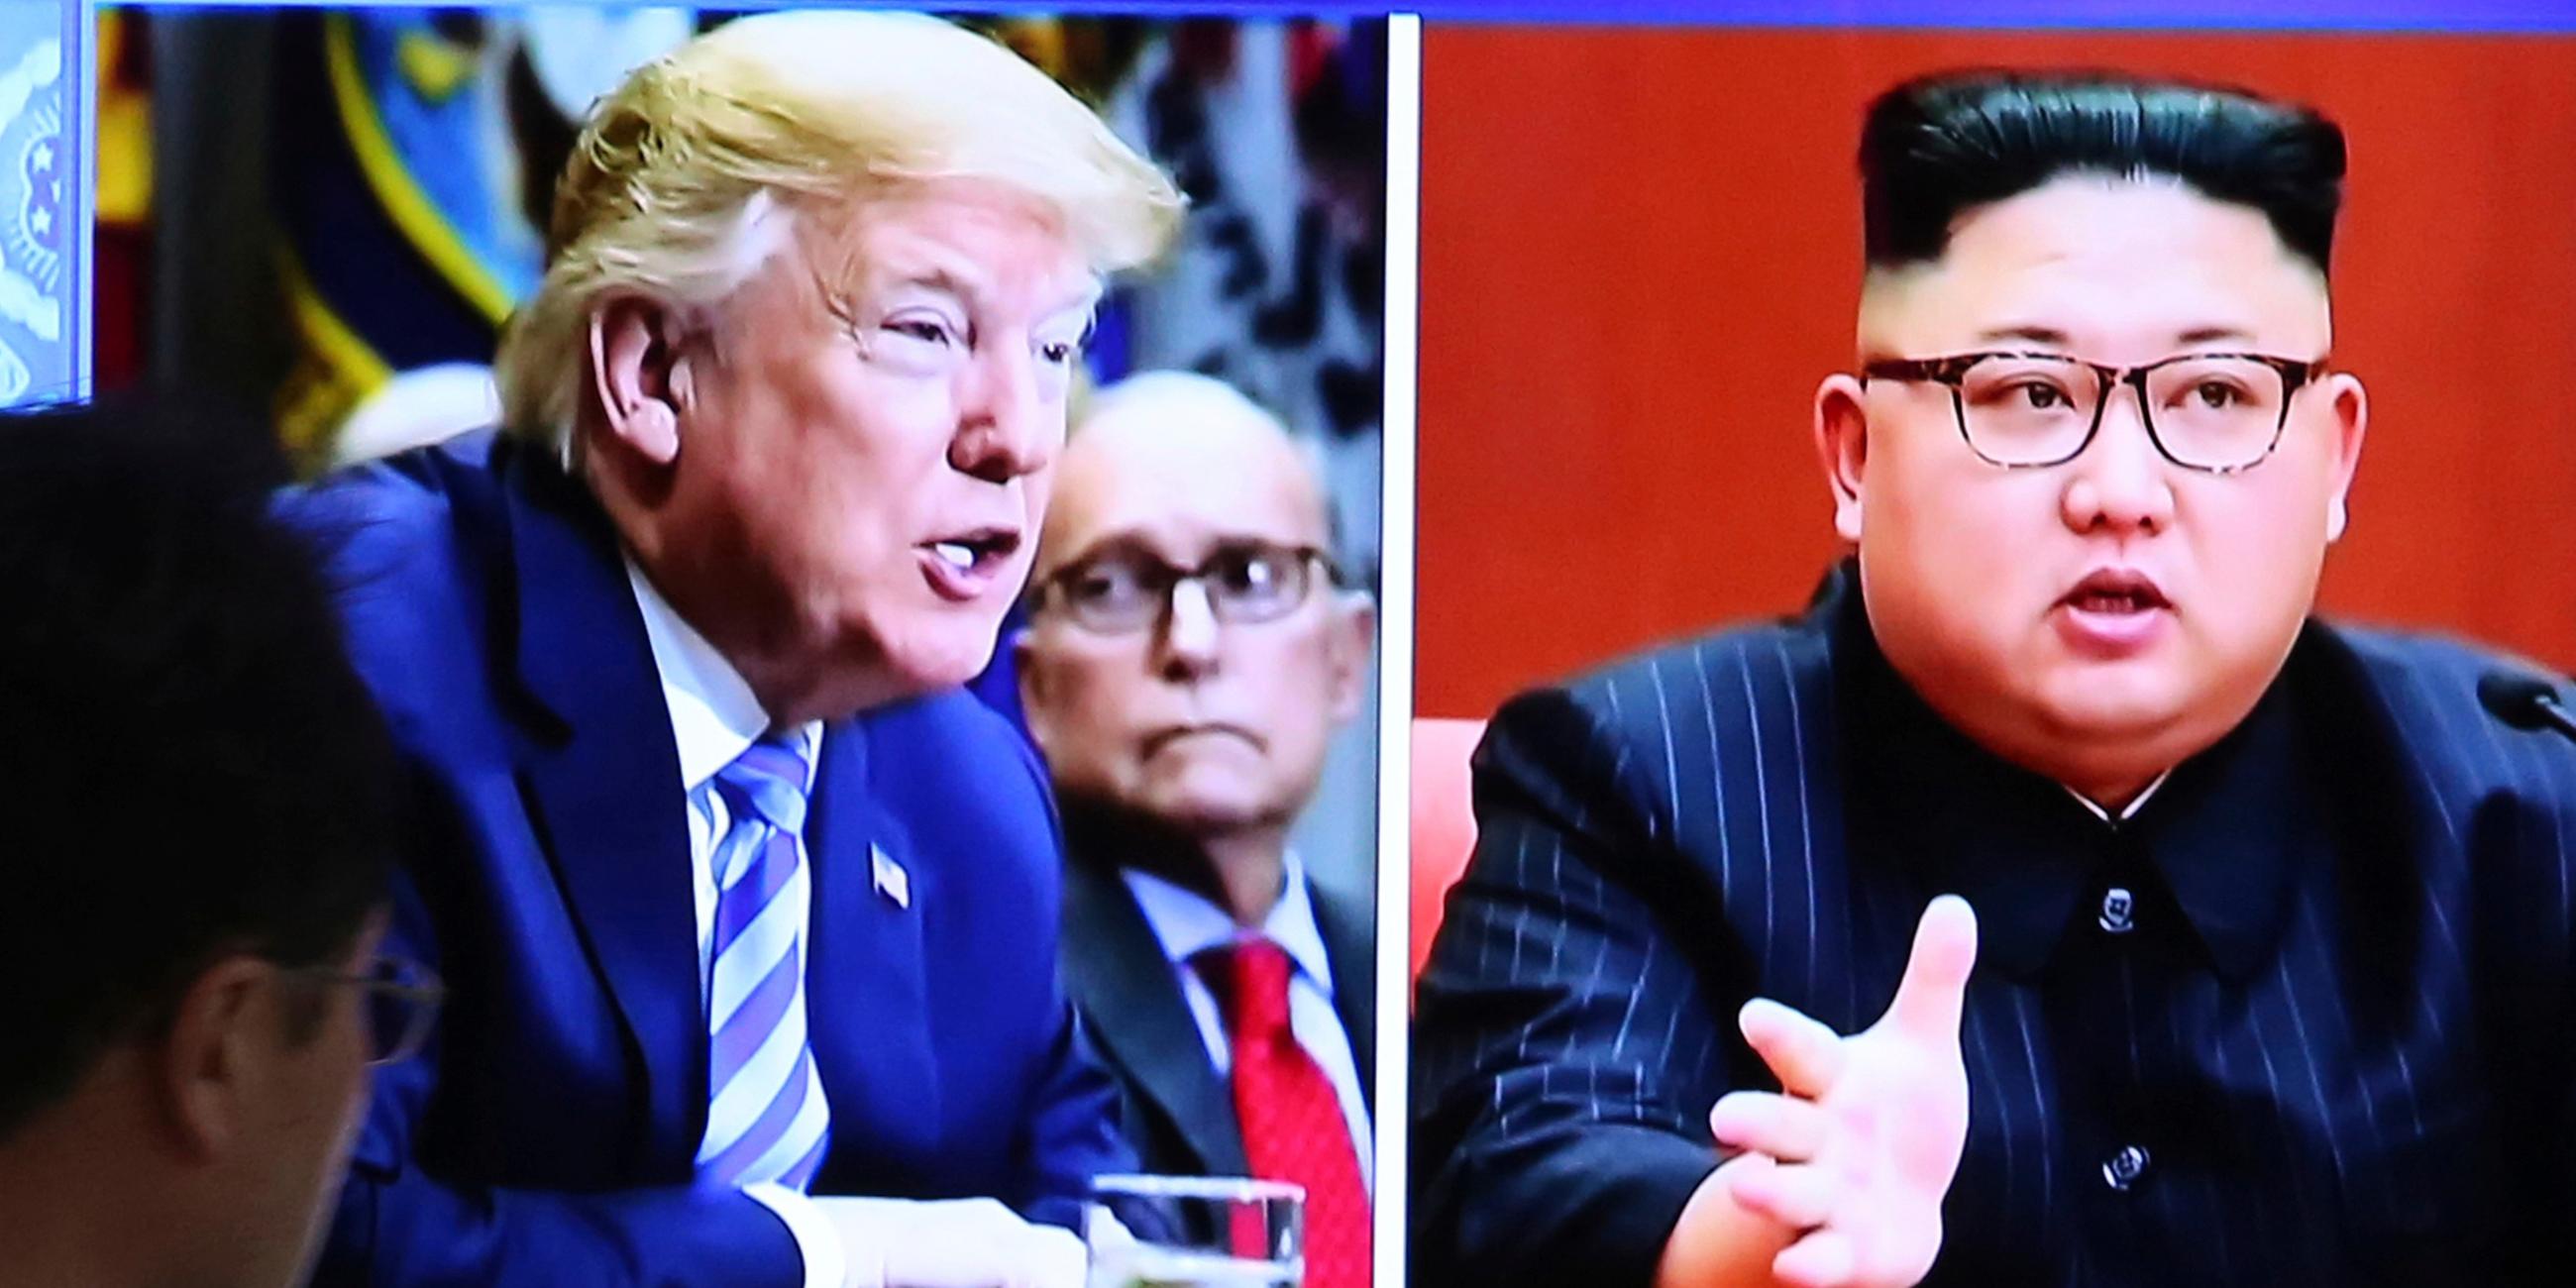 "ZDFzeit: Kim, Trump und die Bombe": Donald Trump und Kim Jong Un sind auf zwei verschiedenen Fotos in Nahaufnahme zu sehen.